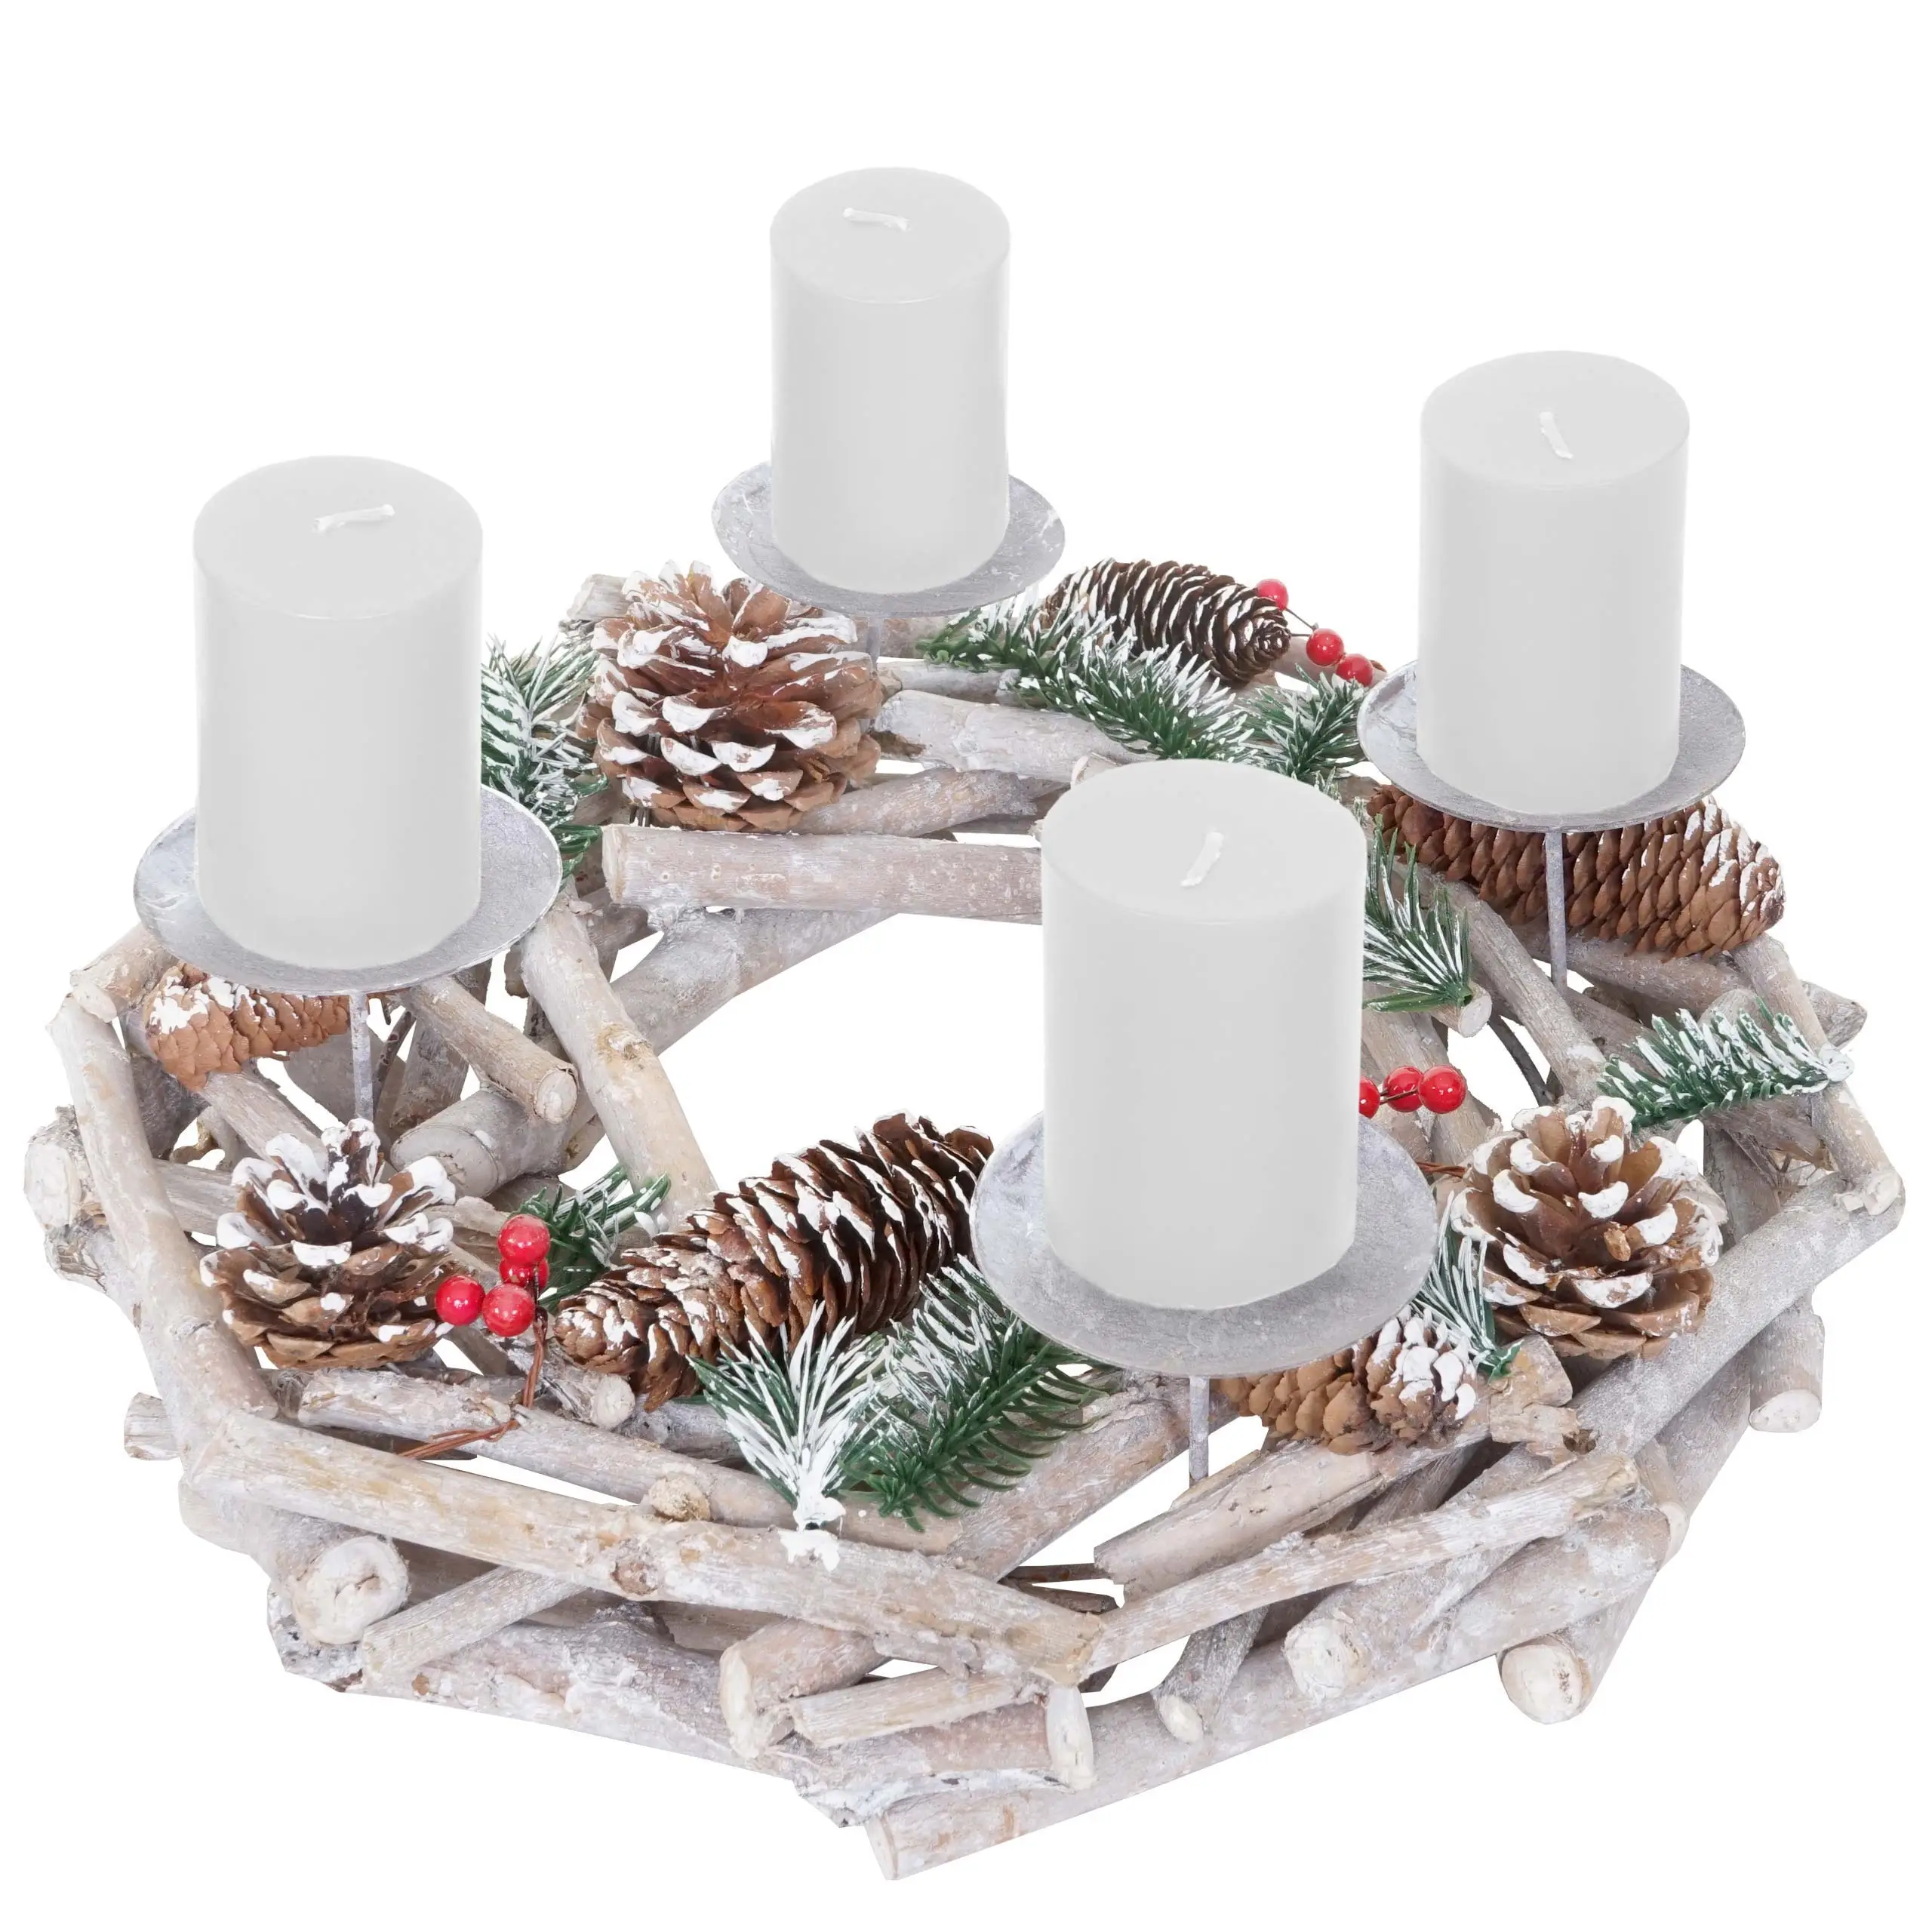 Kerzen Adventskranz wei脽 Holz rund